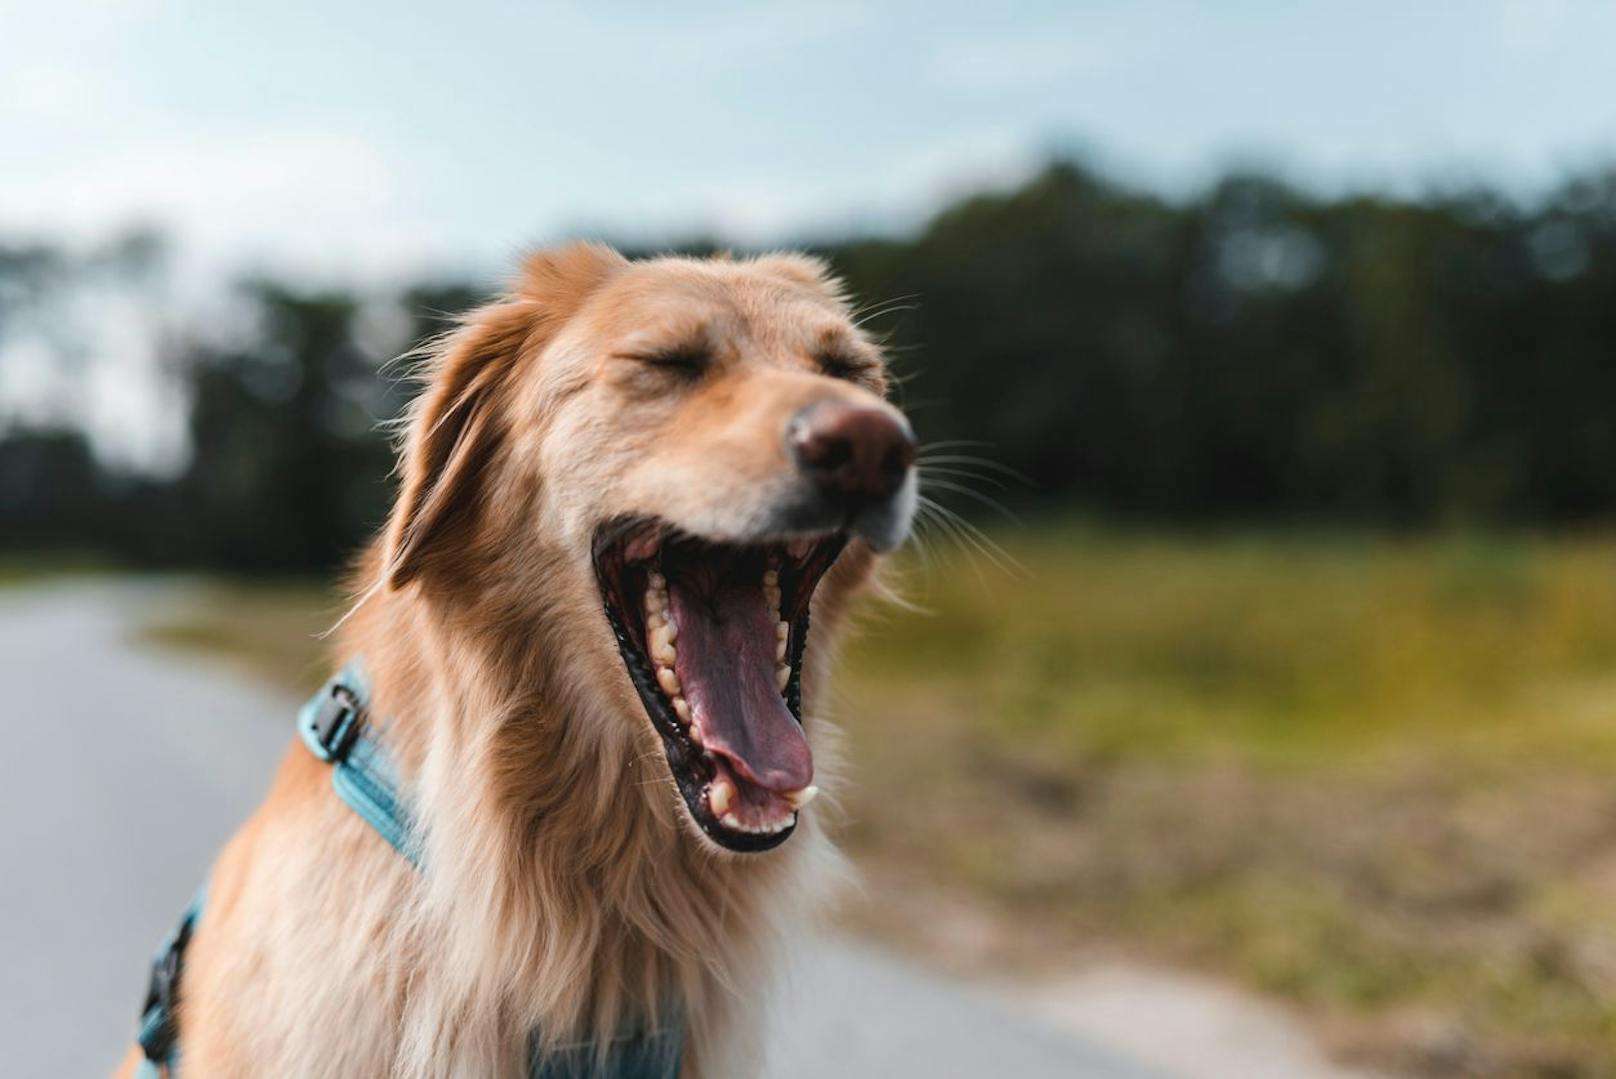 Auch das Gähnen kann durchaus ein Zeichen dafür sein, dass dein Hund ordentlich ang'fresse ist - wohl vergleichbar mit menschlichem Augenrollen.